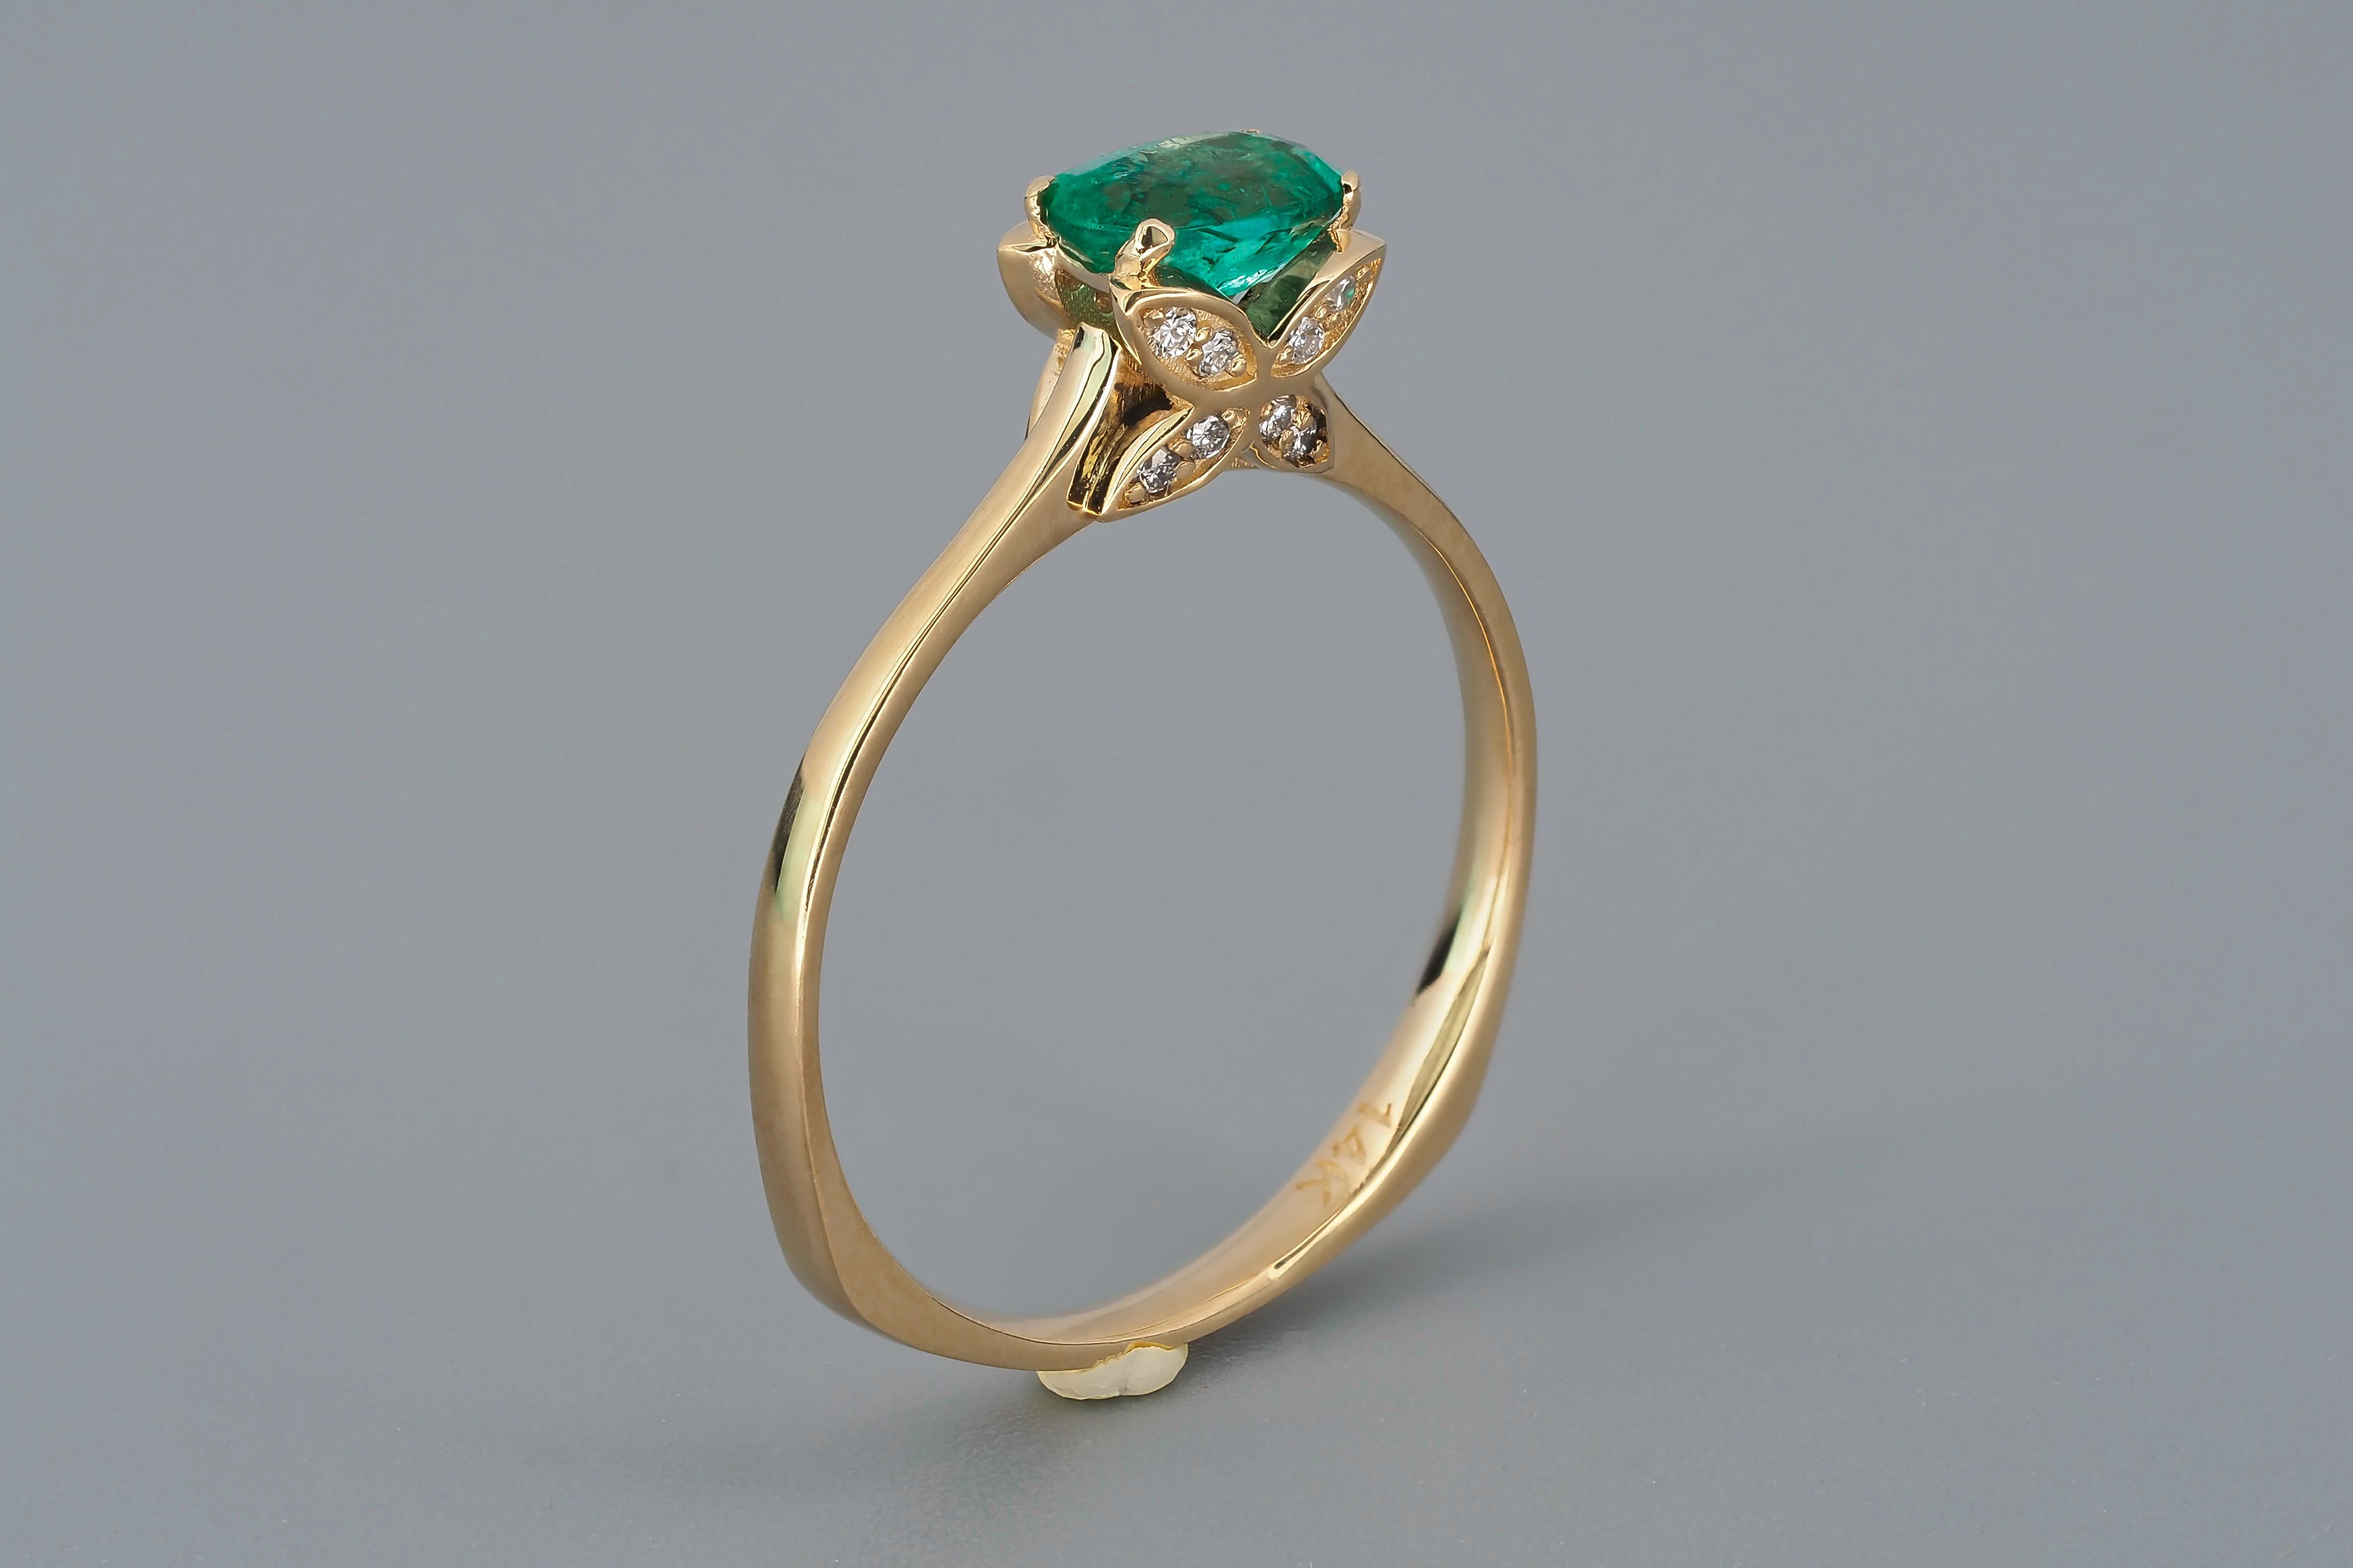 Schmetterling Gold Ring mit Smaragd. 
Natürlicher Smaragdring aus 14k Gold. Mai-Geburtsstein-Ring. Ovaler Smaragdring. Ring mit Smaragd und Diamanten.

Metall: 14k Gold
Gewicht: 1.9 g. abhängig von der Größe.

Set mit Smaragd, Farbe - grün
Ovaler